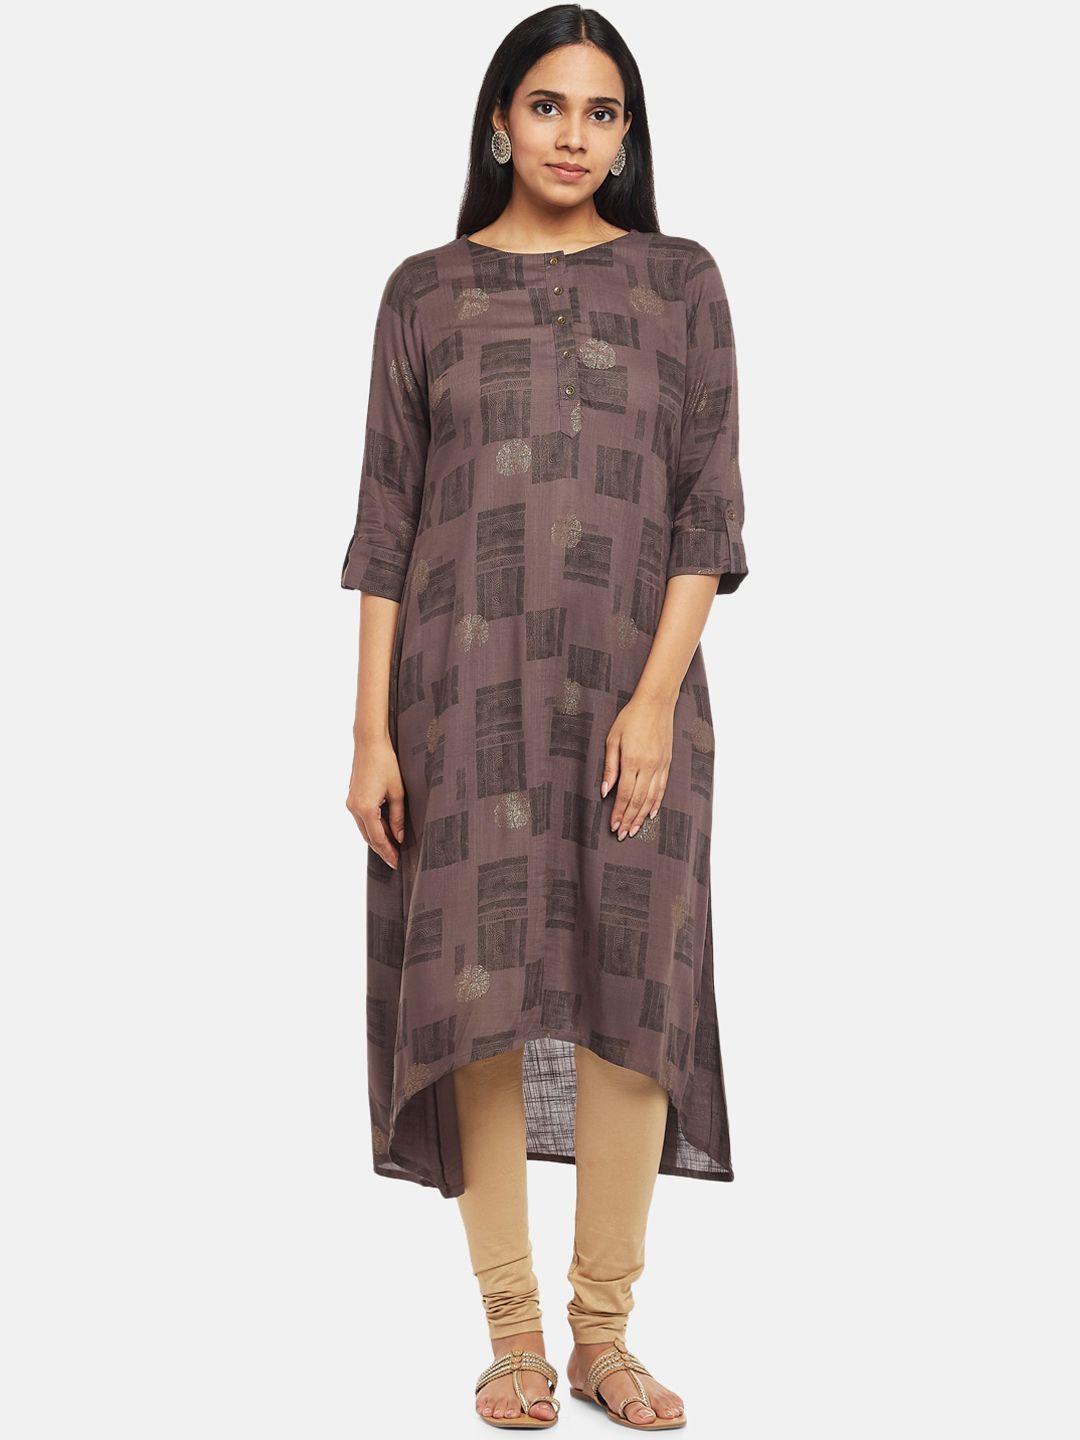 rangmanch by pantaloons women charcoal & brown geometric printed a-line kurta